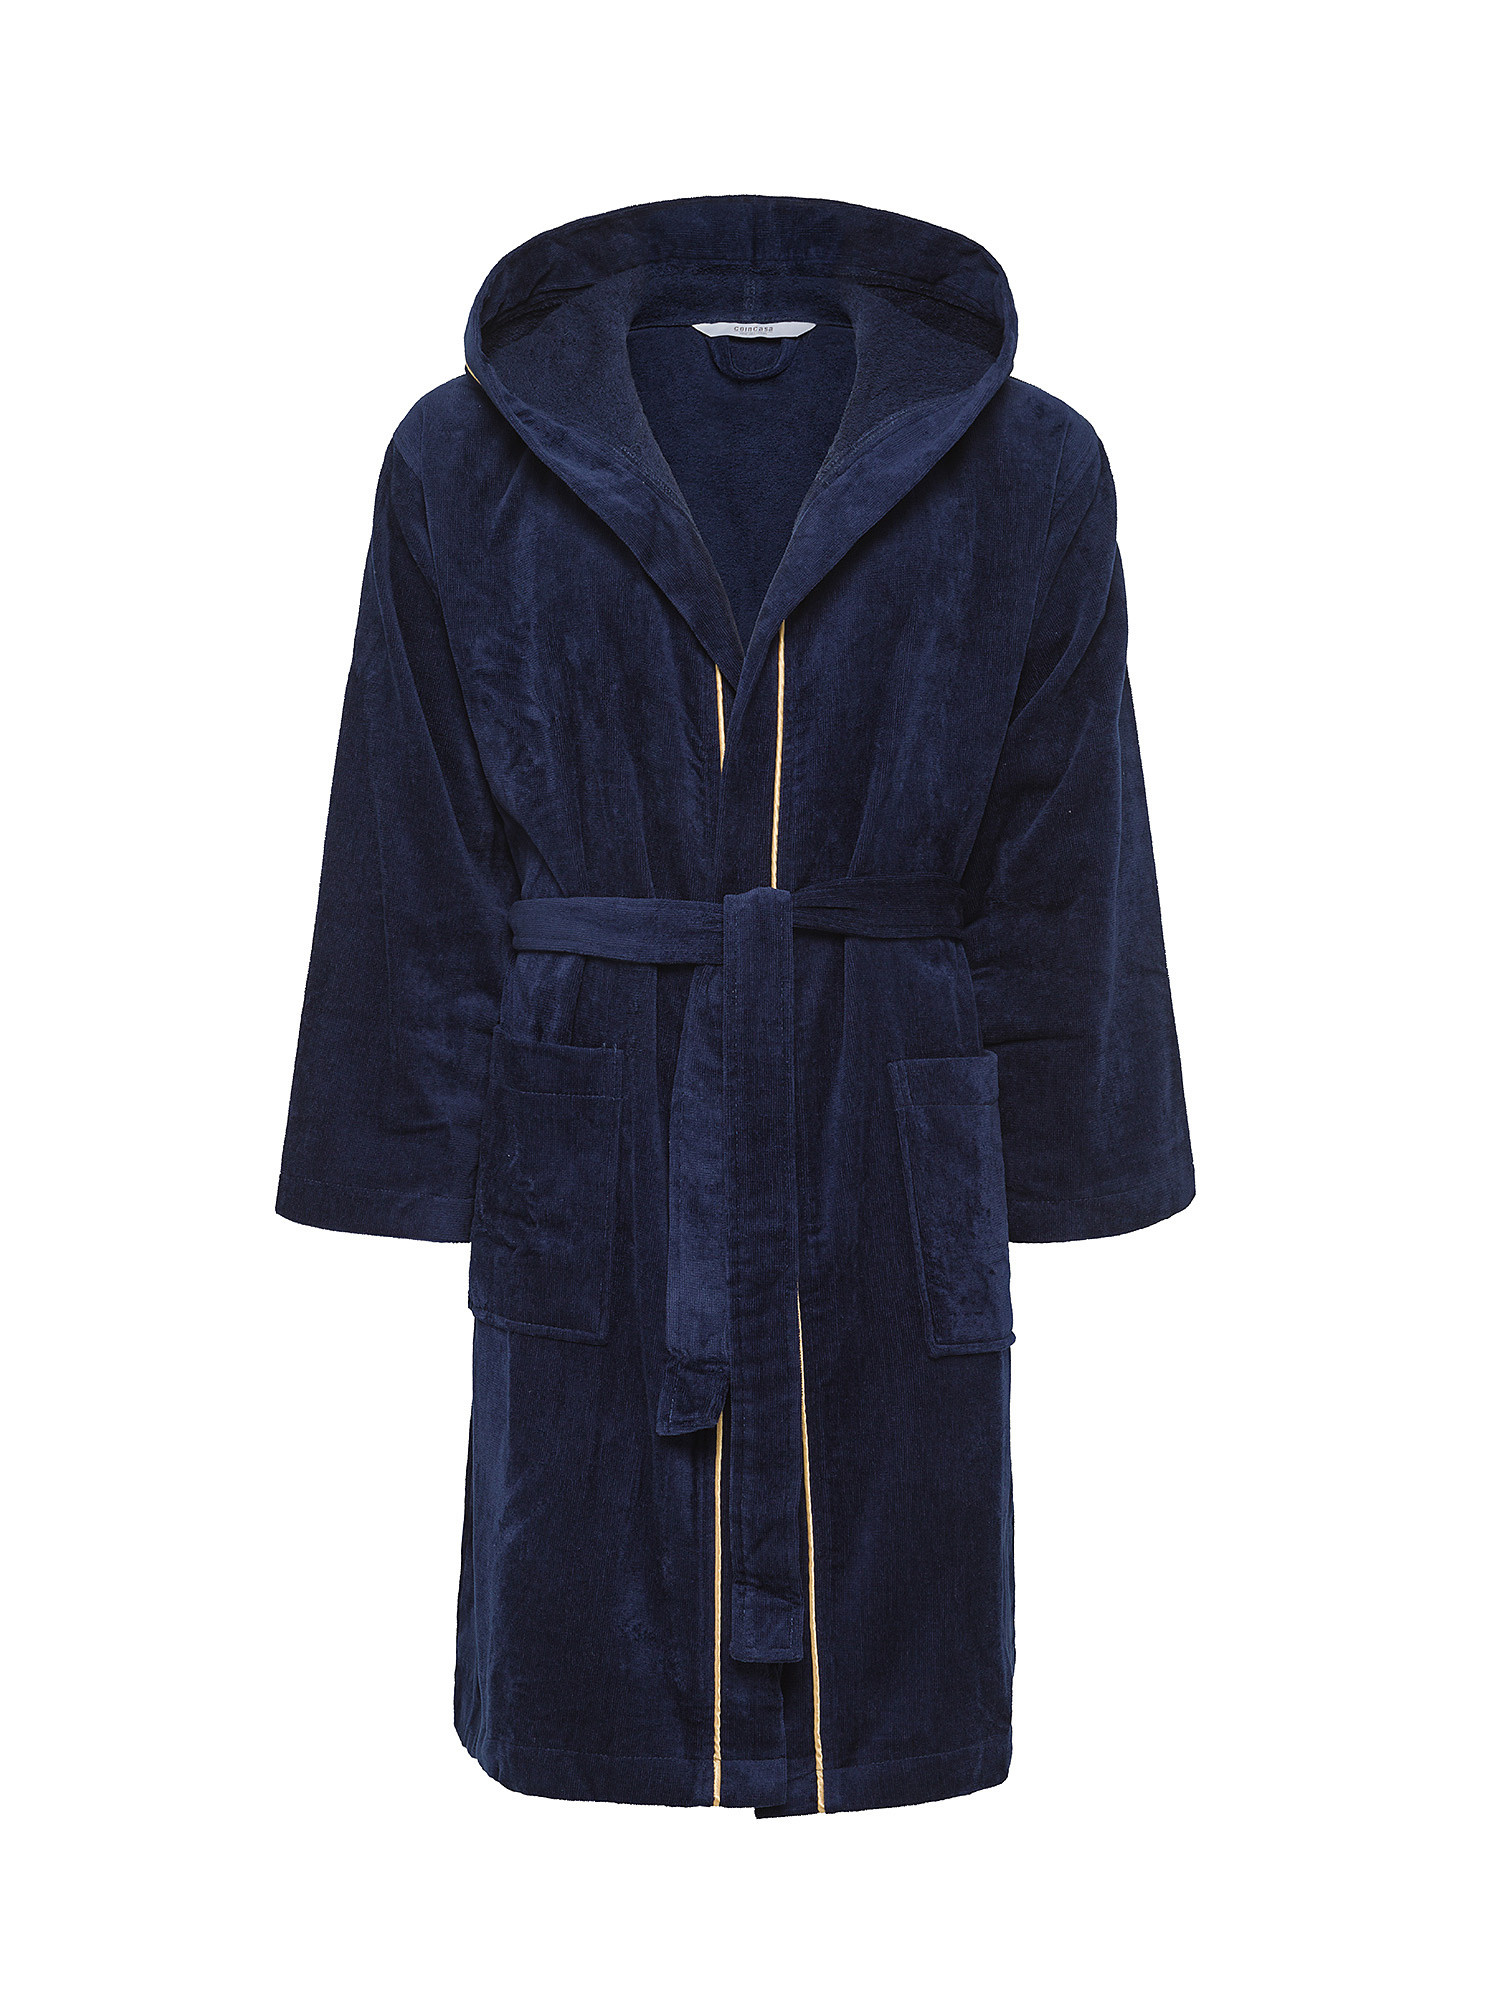 Solid color velor cotton bathrobe, Blue, large image number 0